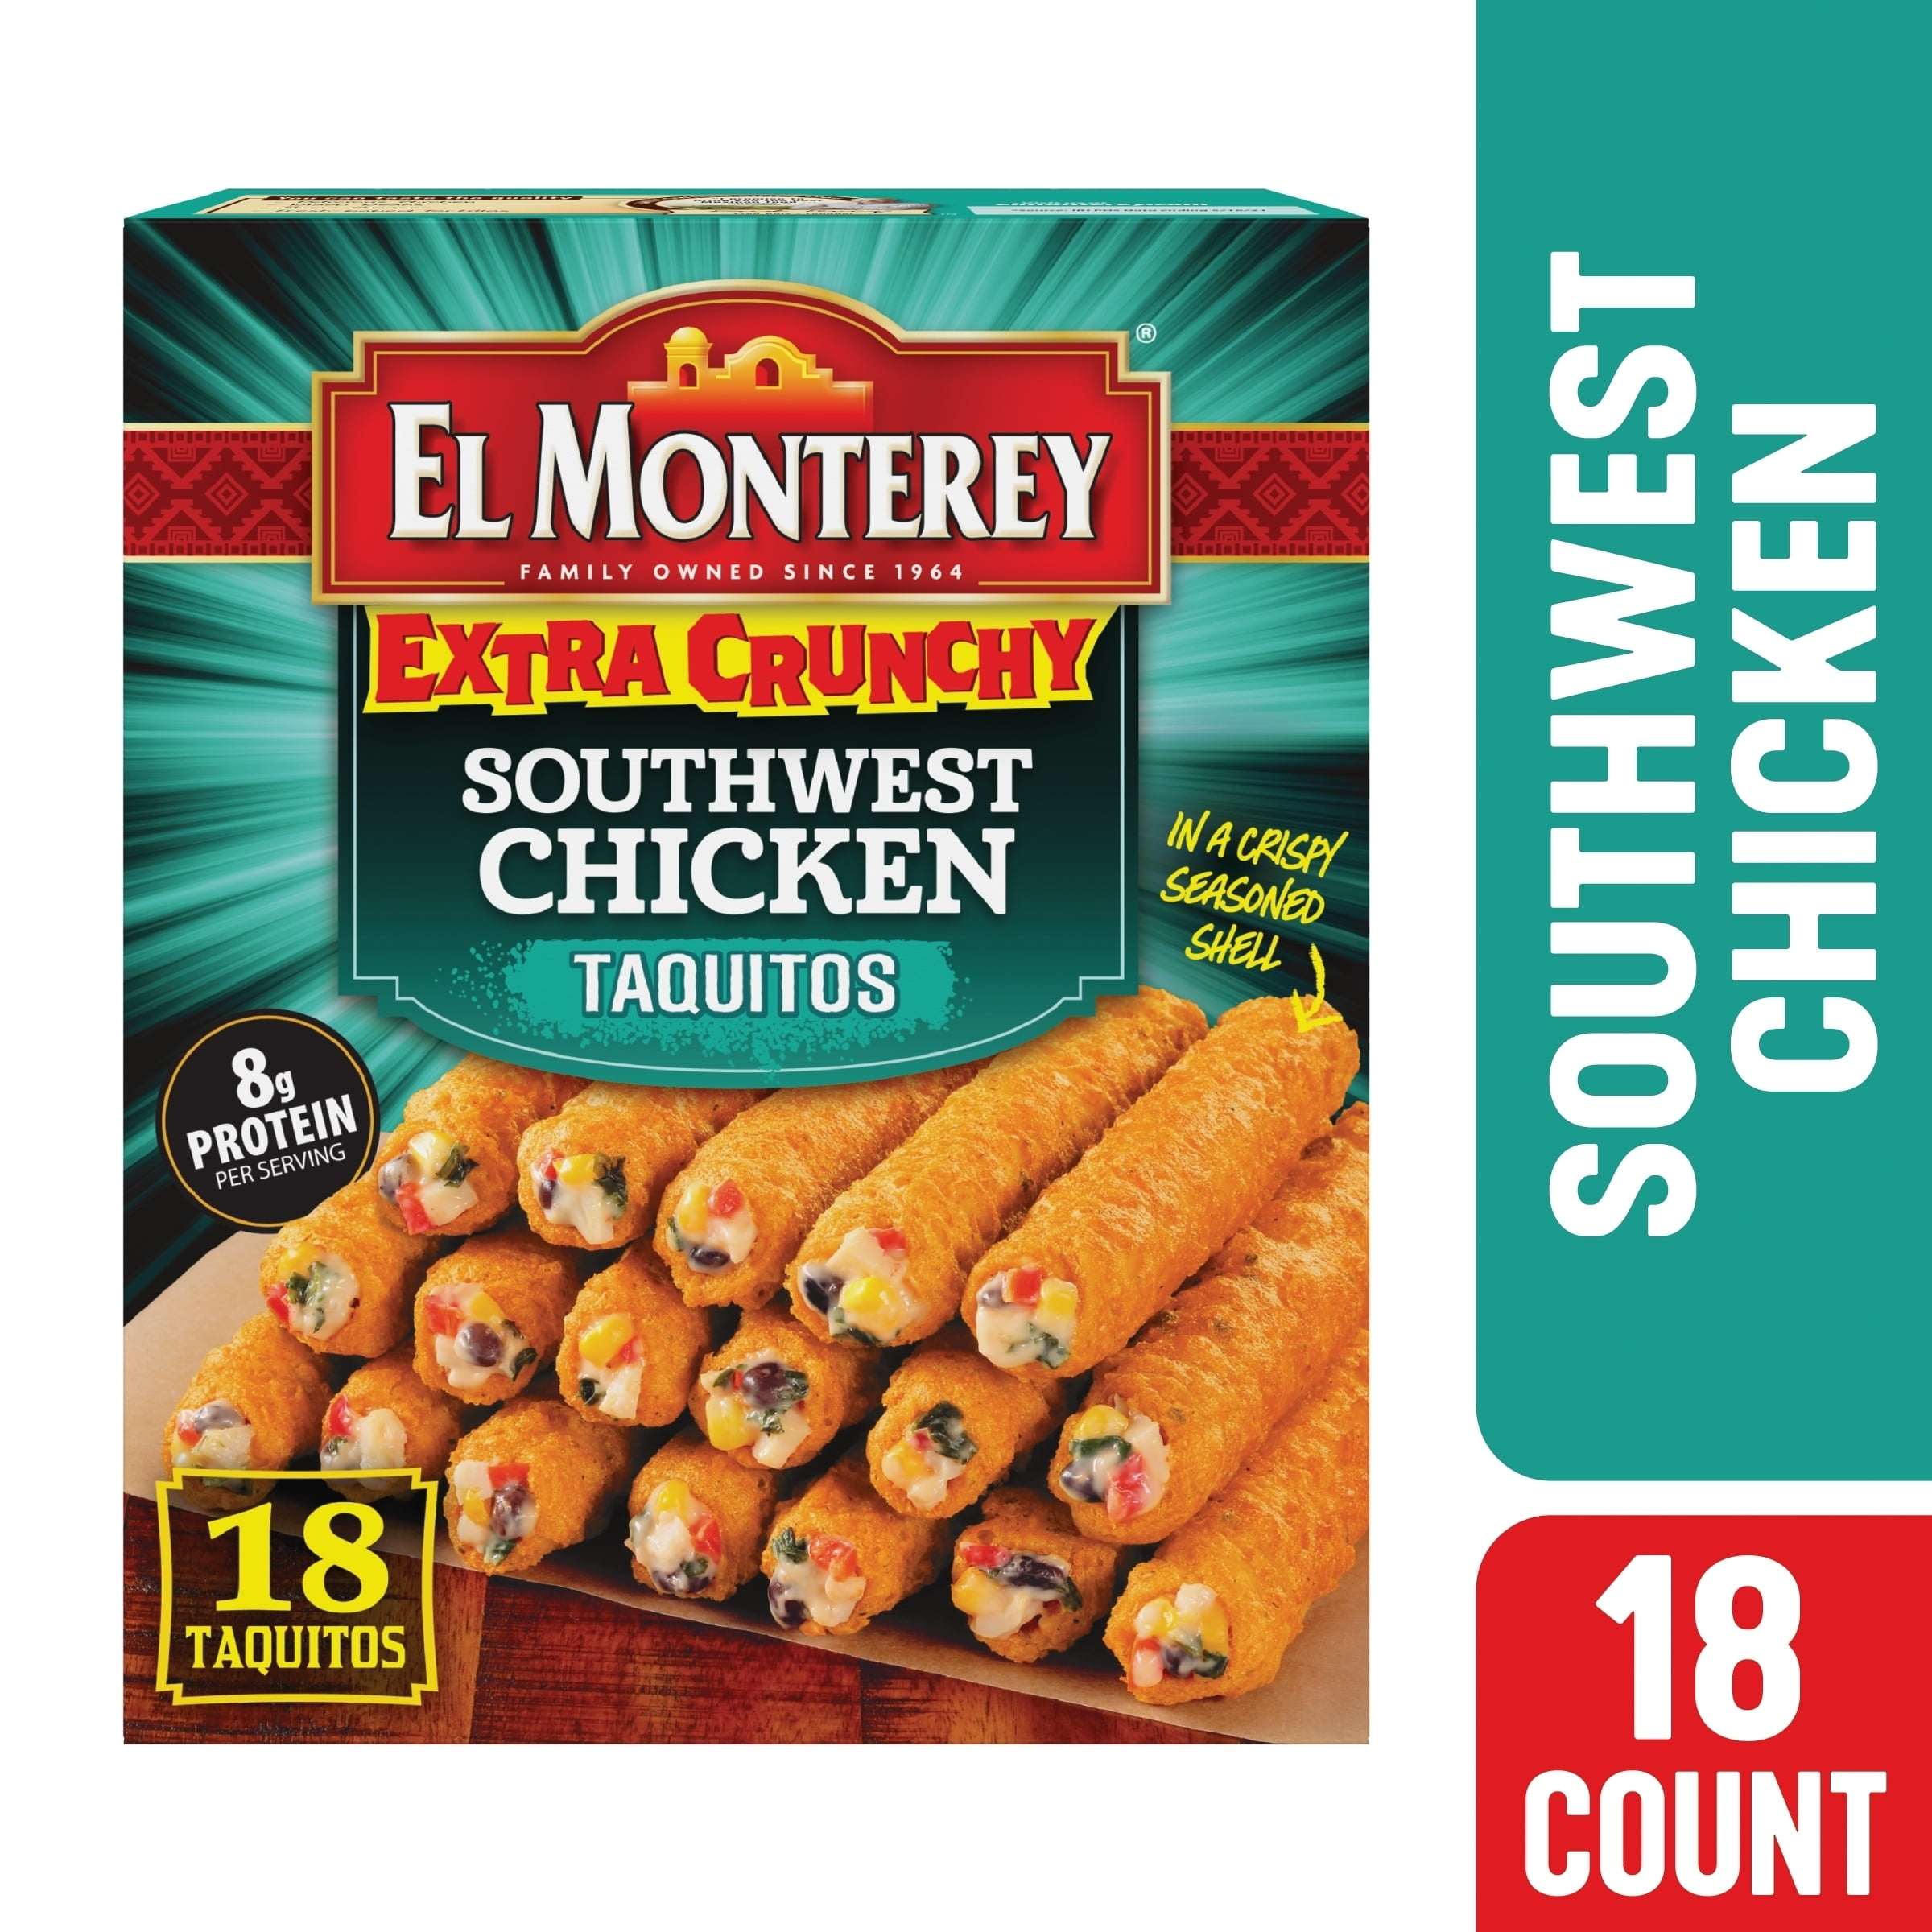 20.7 18 El (Frozen) Taquitos, Monterey Count Extra Crunchy Oz, Chicken Southwest